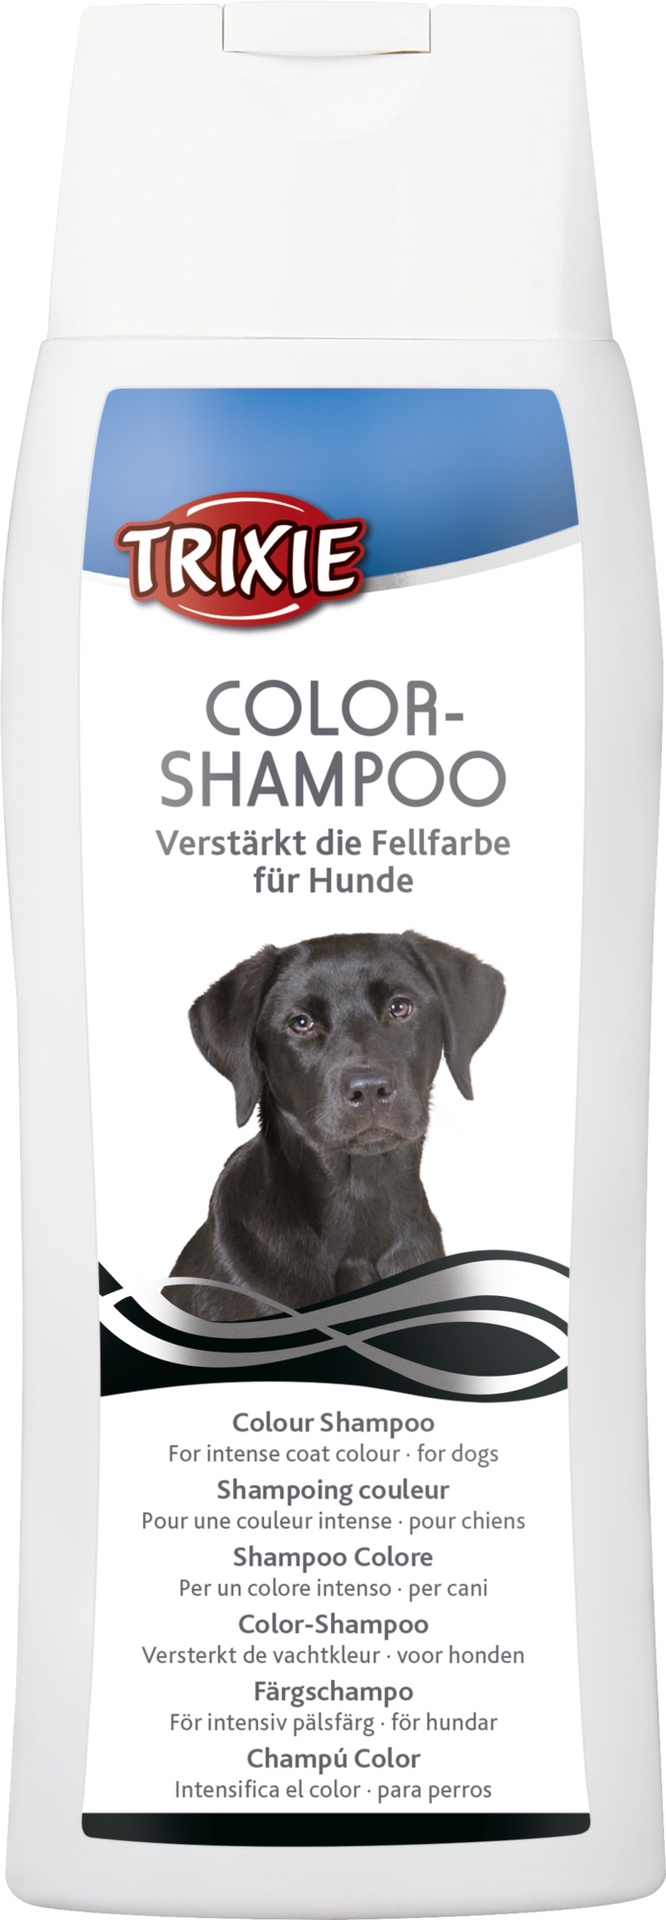 Trixie Color-Shampoo